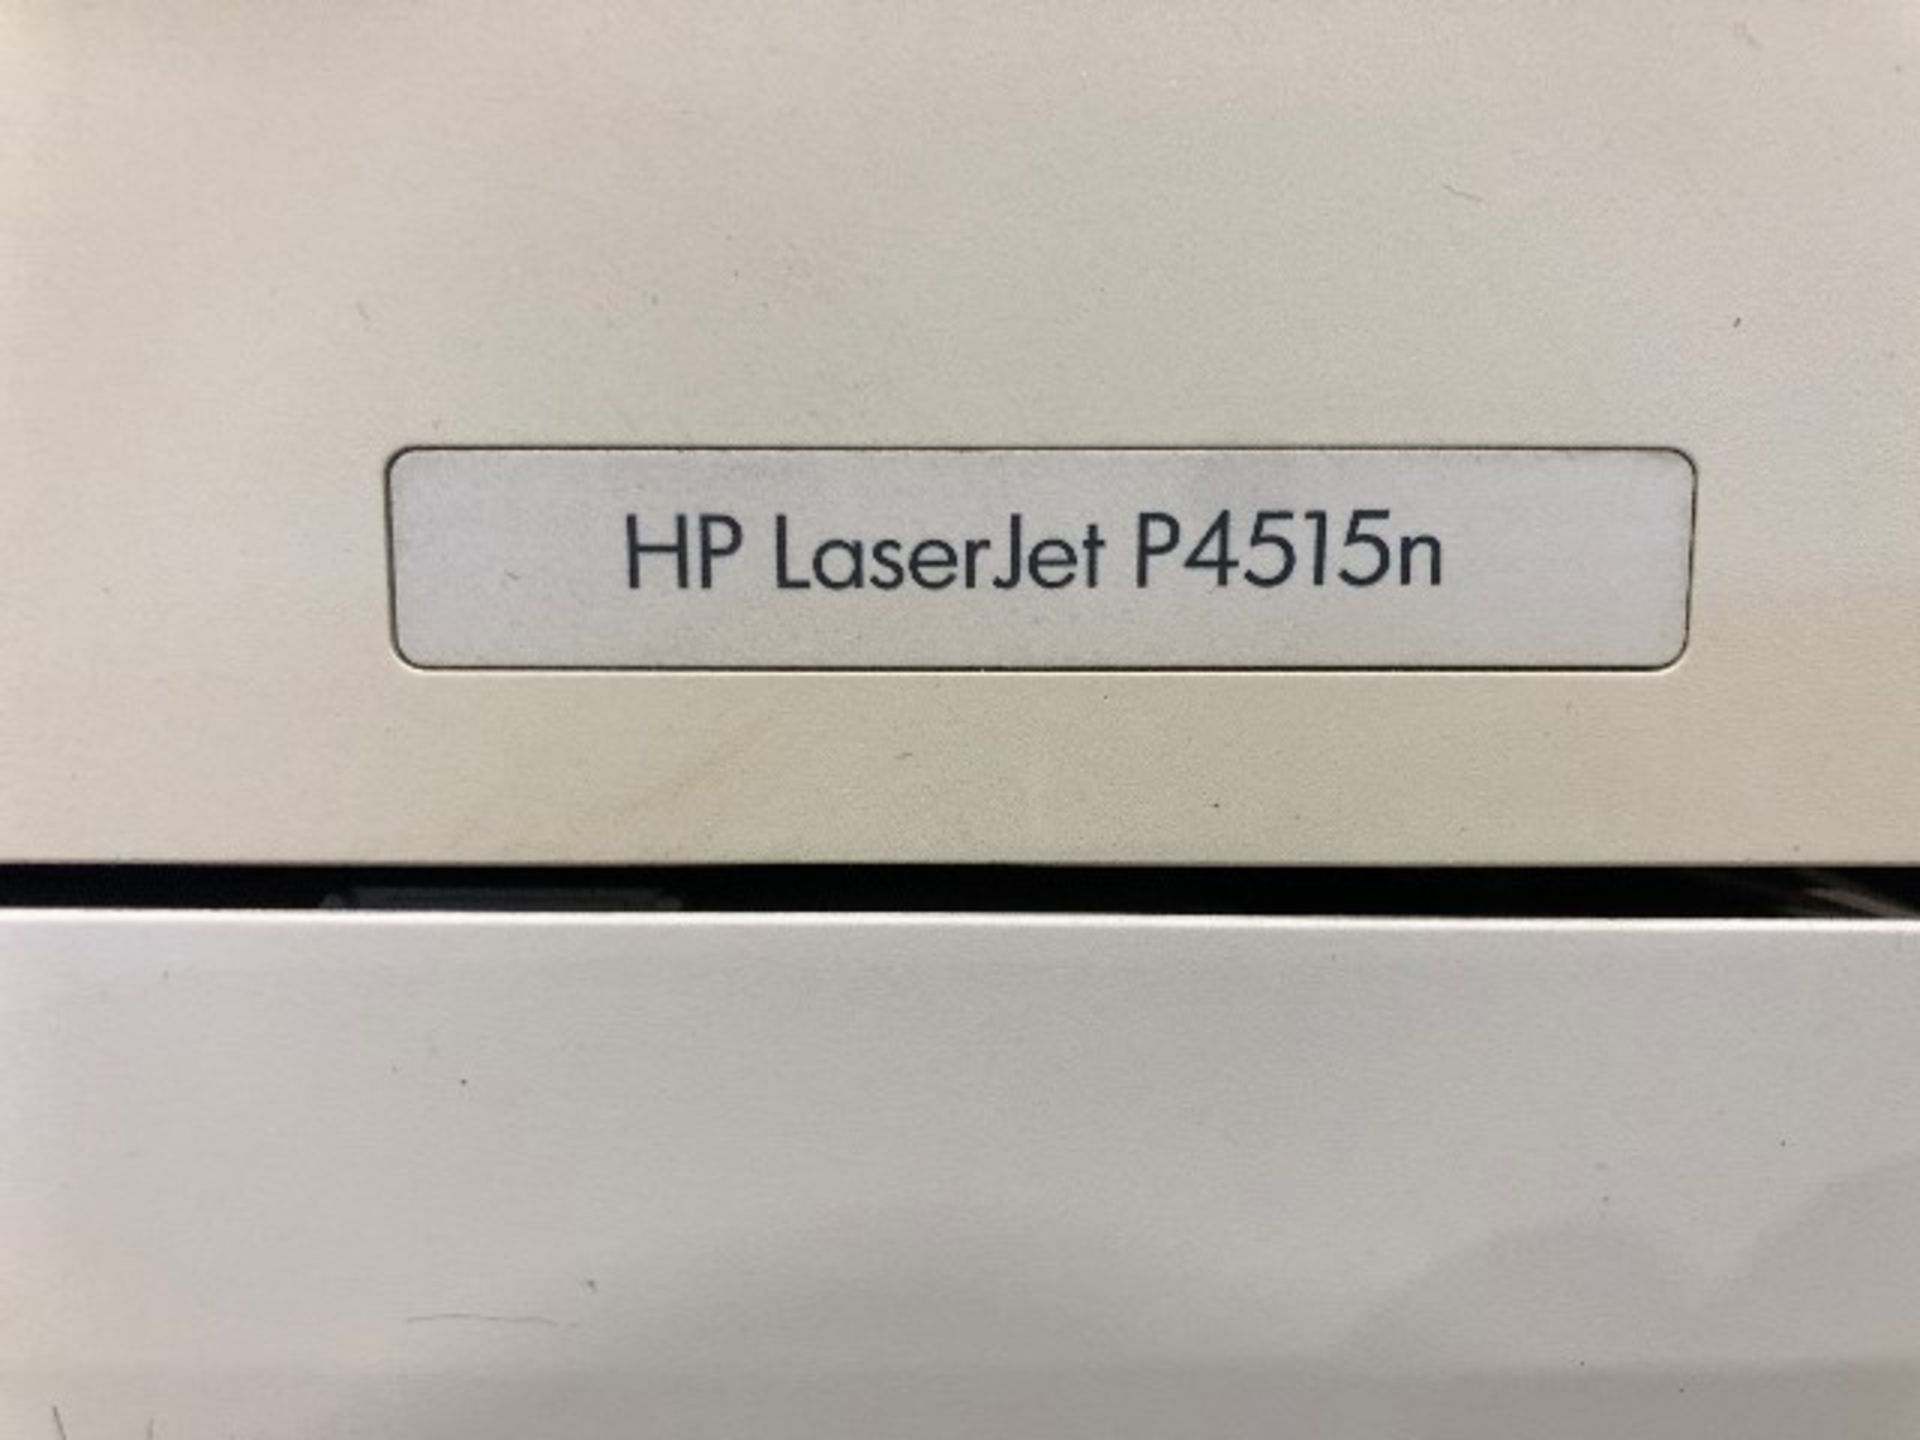 HP LaserJet P4515n printer - Image 3 of 4